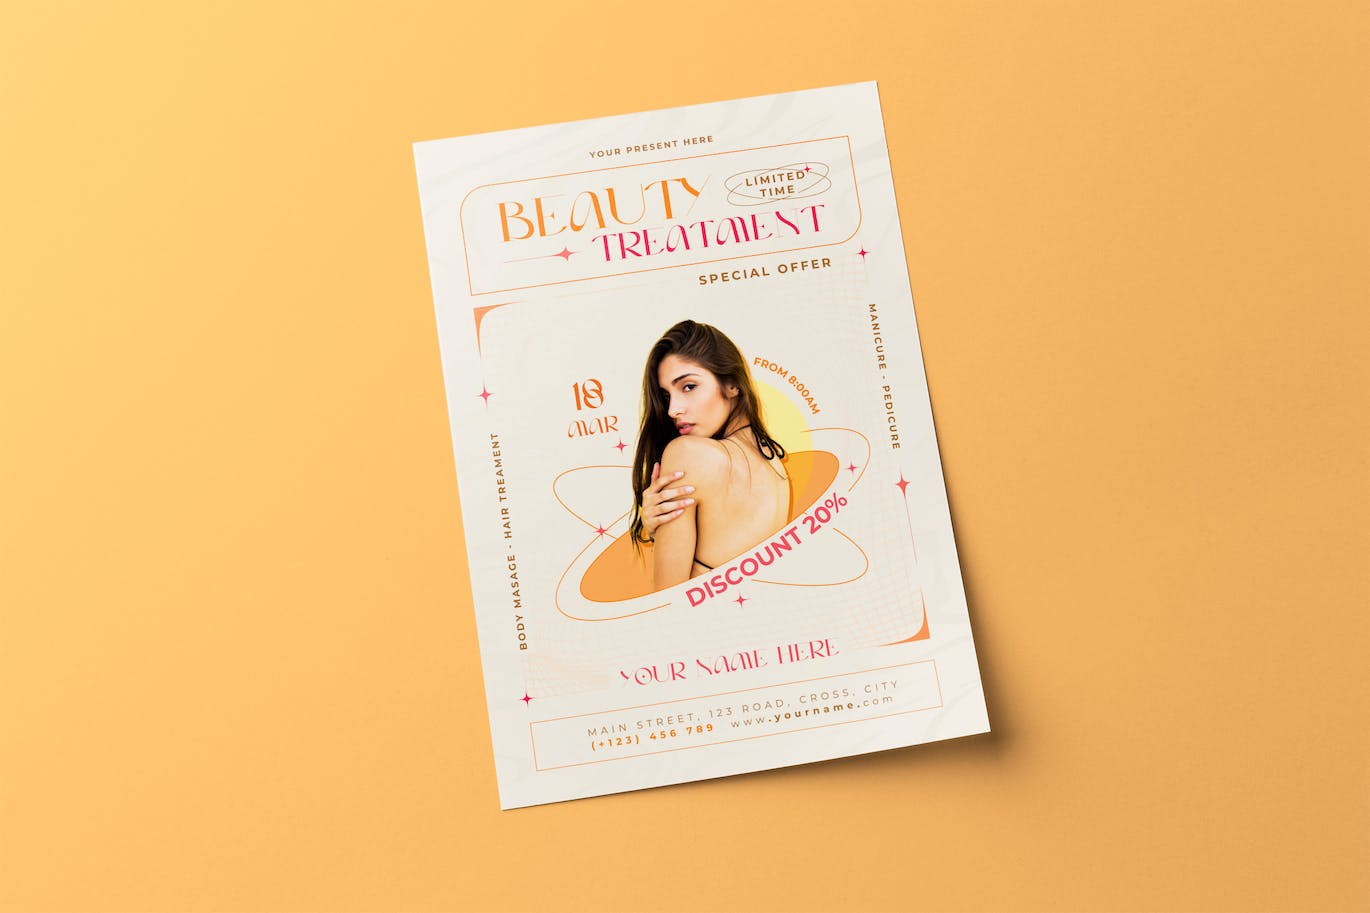 美容护理宣传单模板下载 Beauty Treatment Flyer 设计素材 第1张